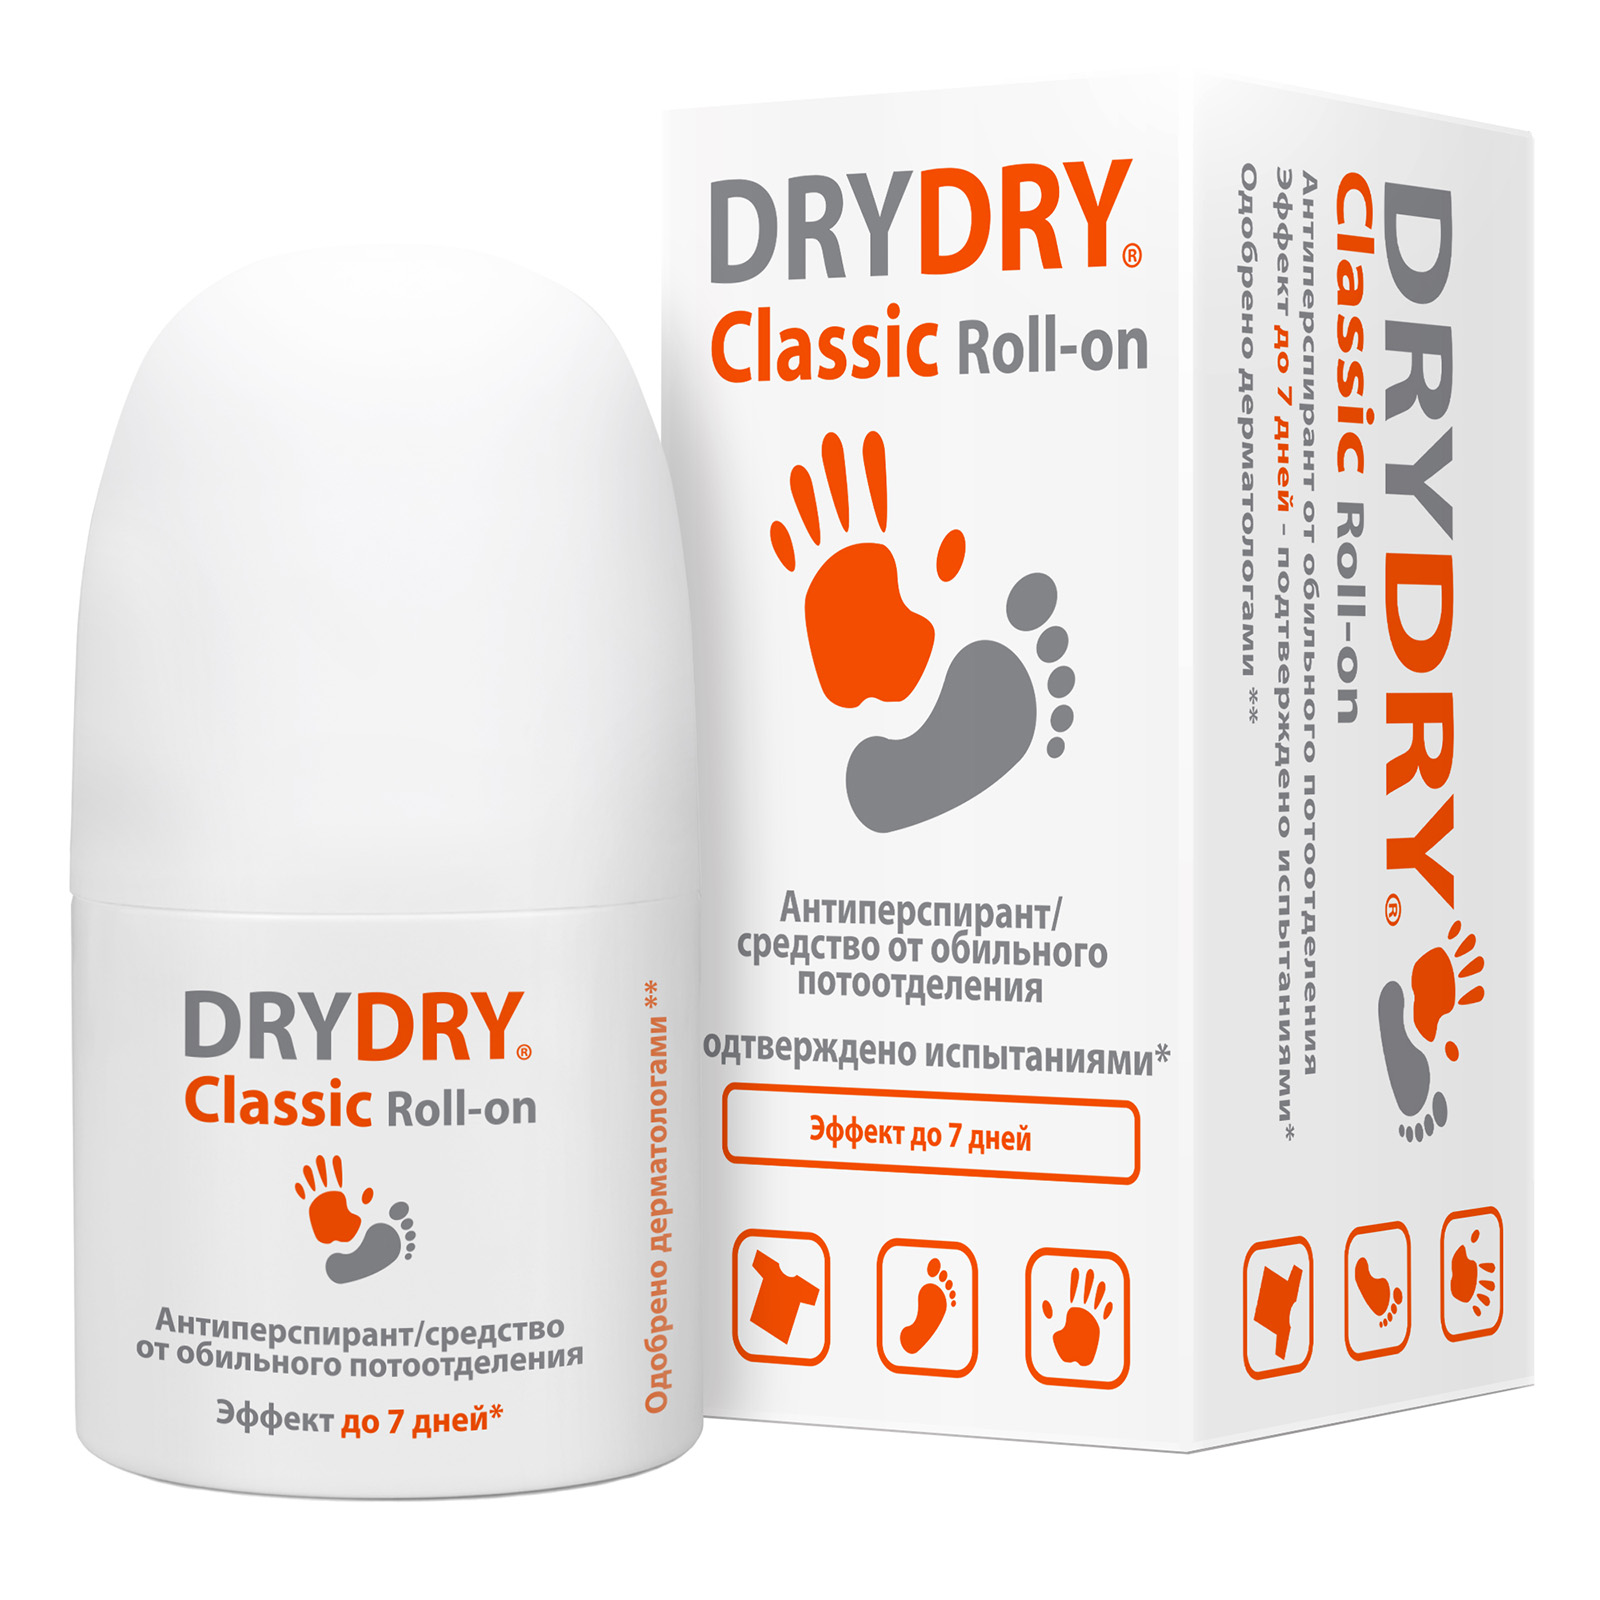 Dry Dry Дезодорант-антиперспирант от обильного потоотделения Classic roll-on, 35 мл (Dry Dry, Classic)